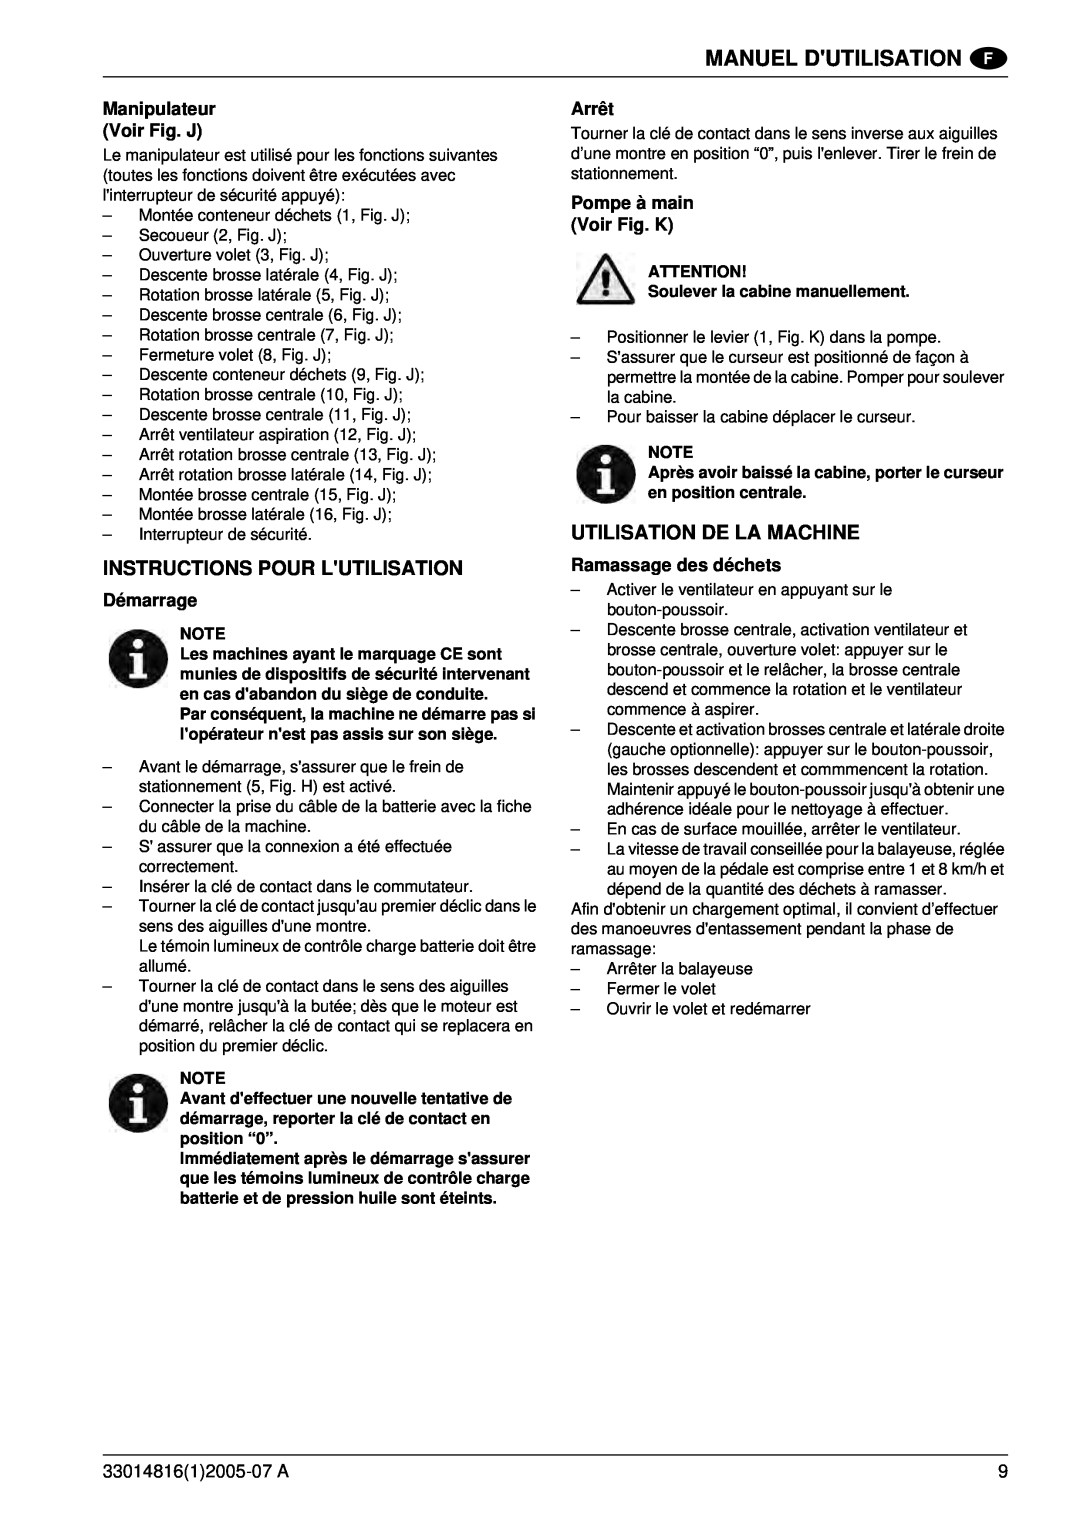 Nilfisk-ALTO SR 1700 2WD B Instructions Pour Lutilisation, Utilisation De La Machine, Manuel Dutilisation, Démarrage 